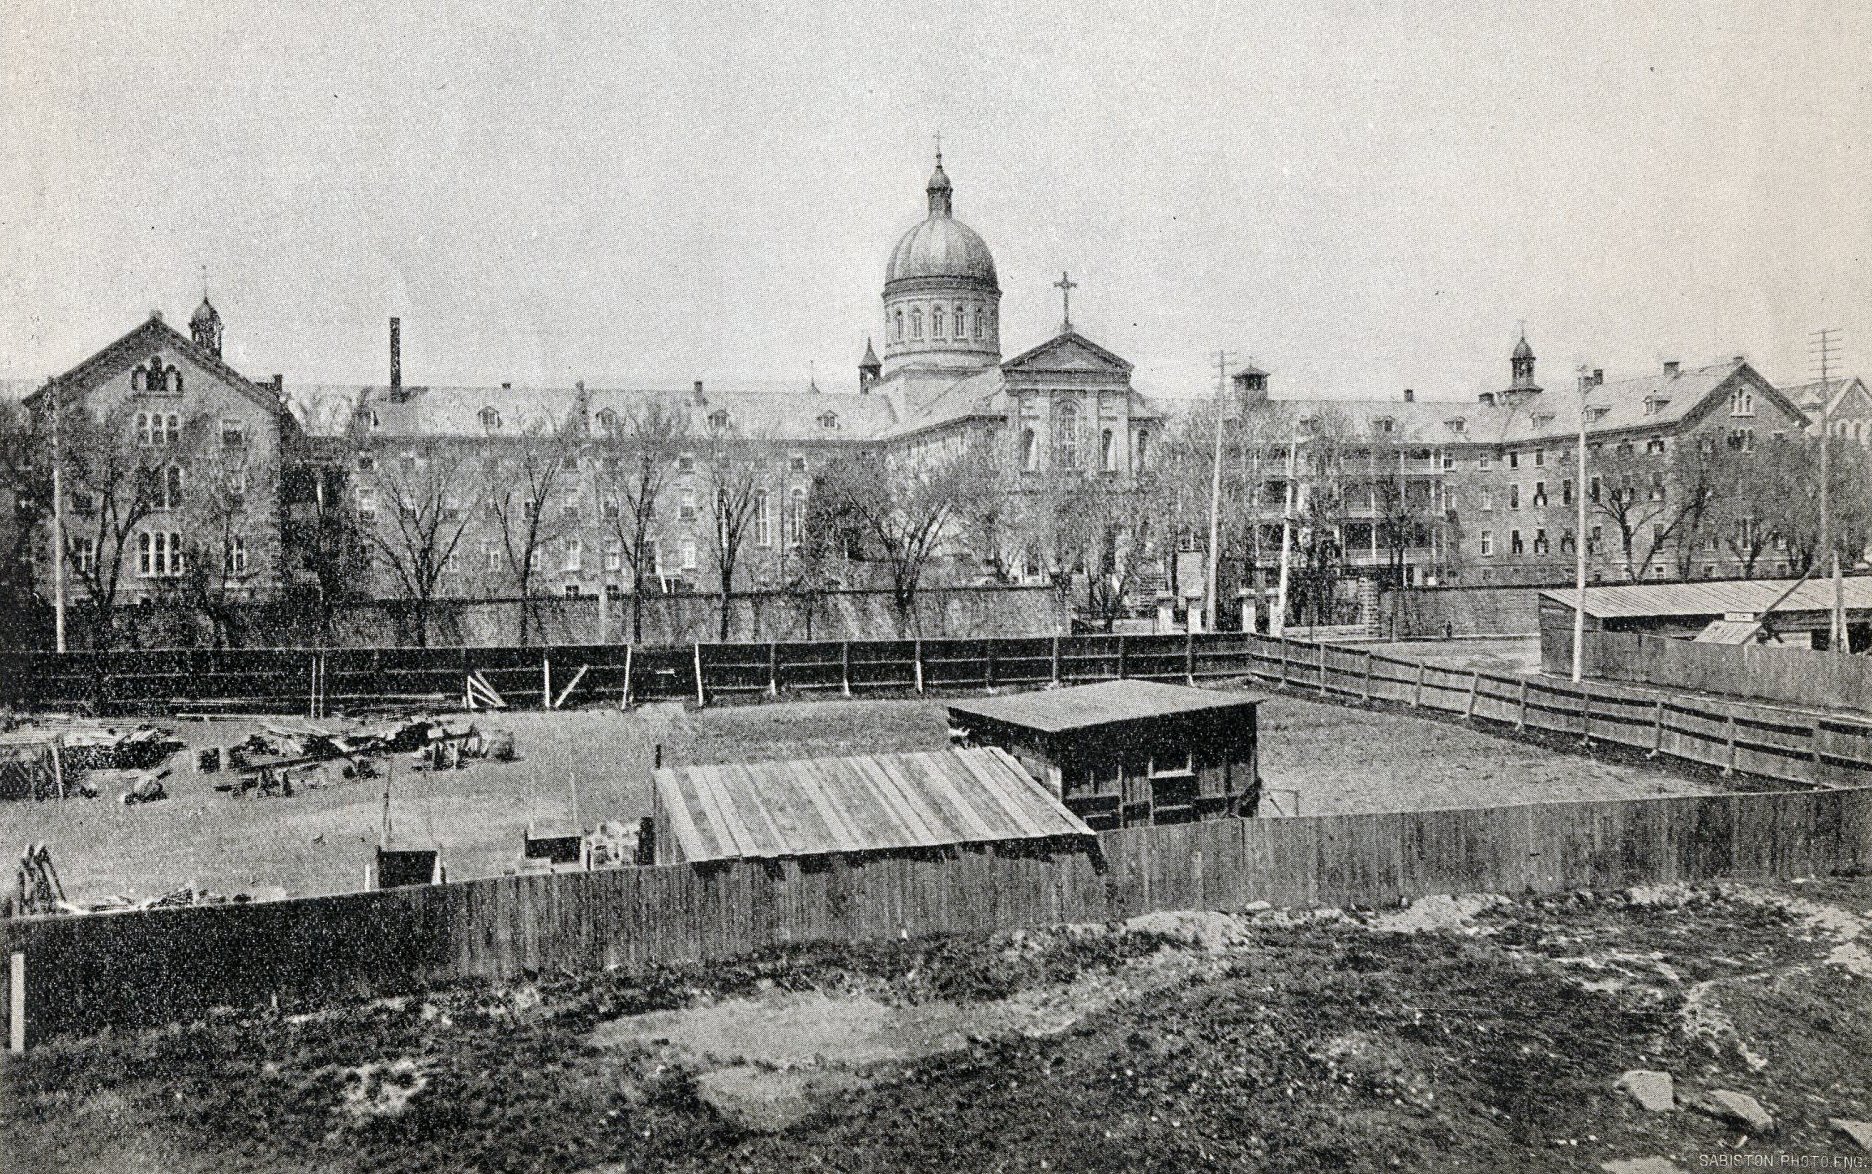 "Hotel-Dieu," 1892 photo (Bibliothèque et Archives nationales du Québec).